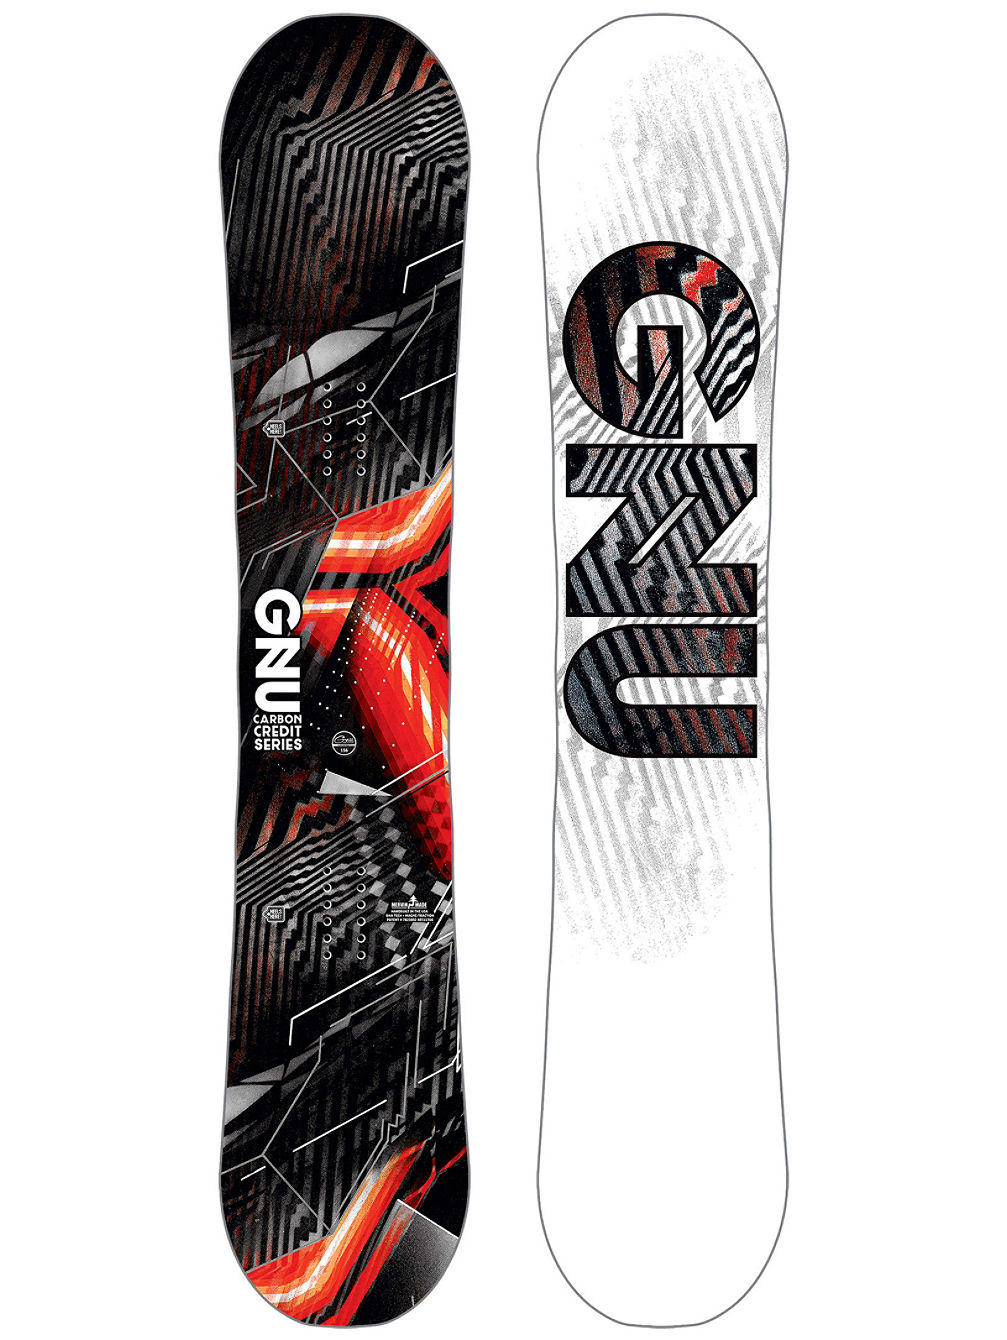 Asym Carbon Credit BTX 162W Snowboard